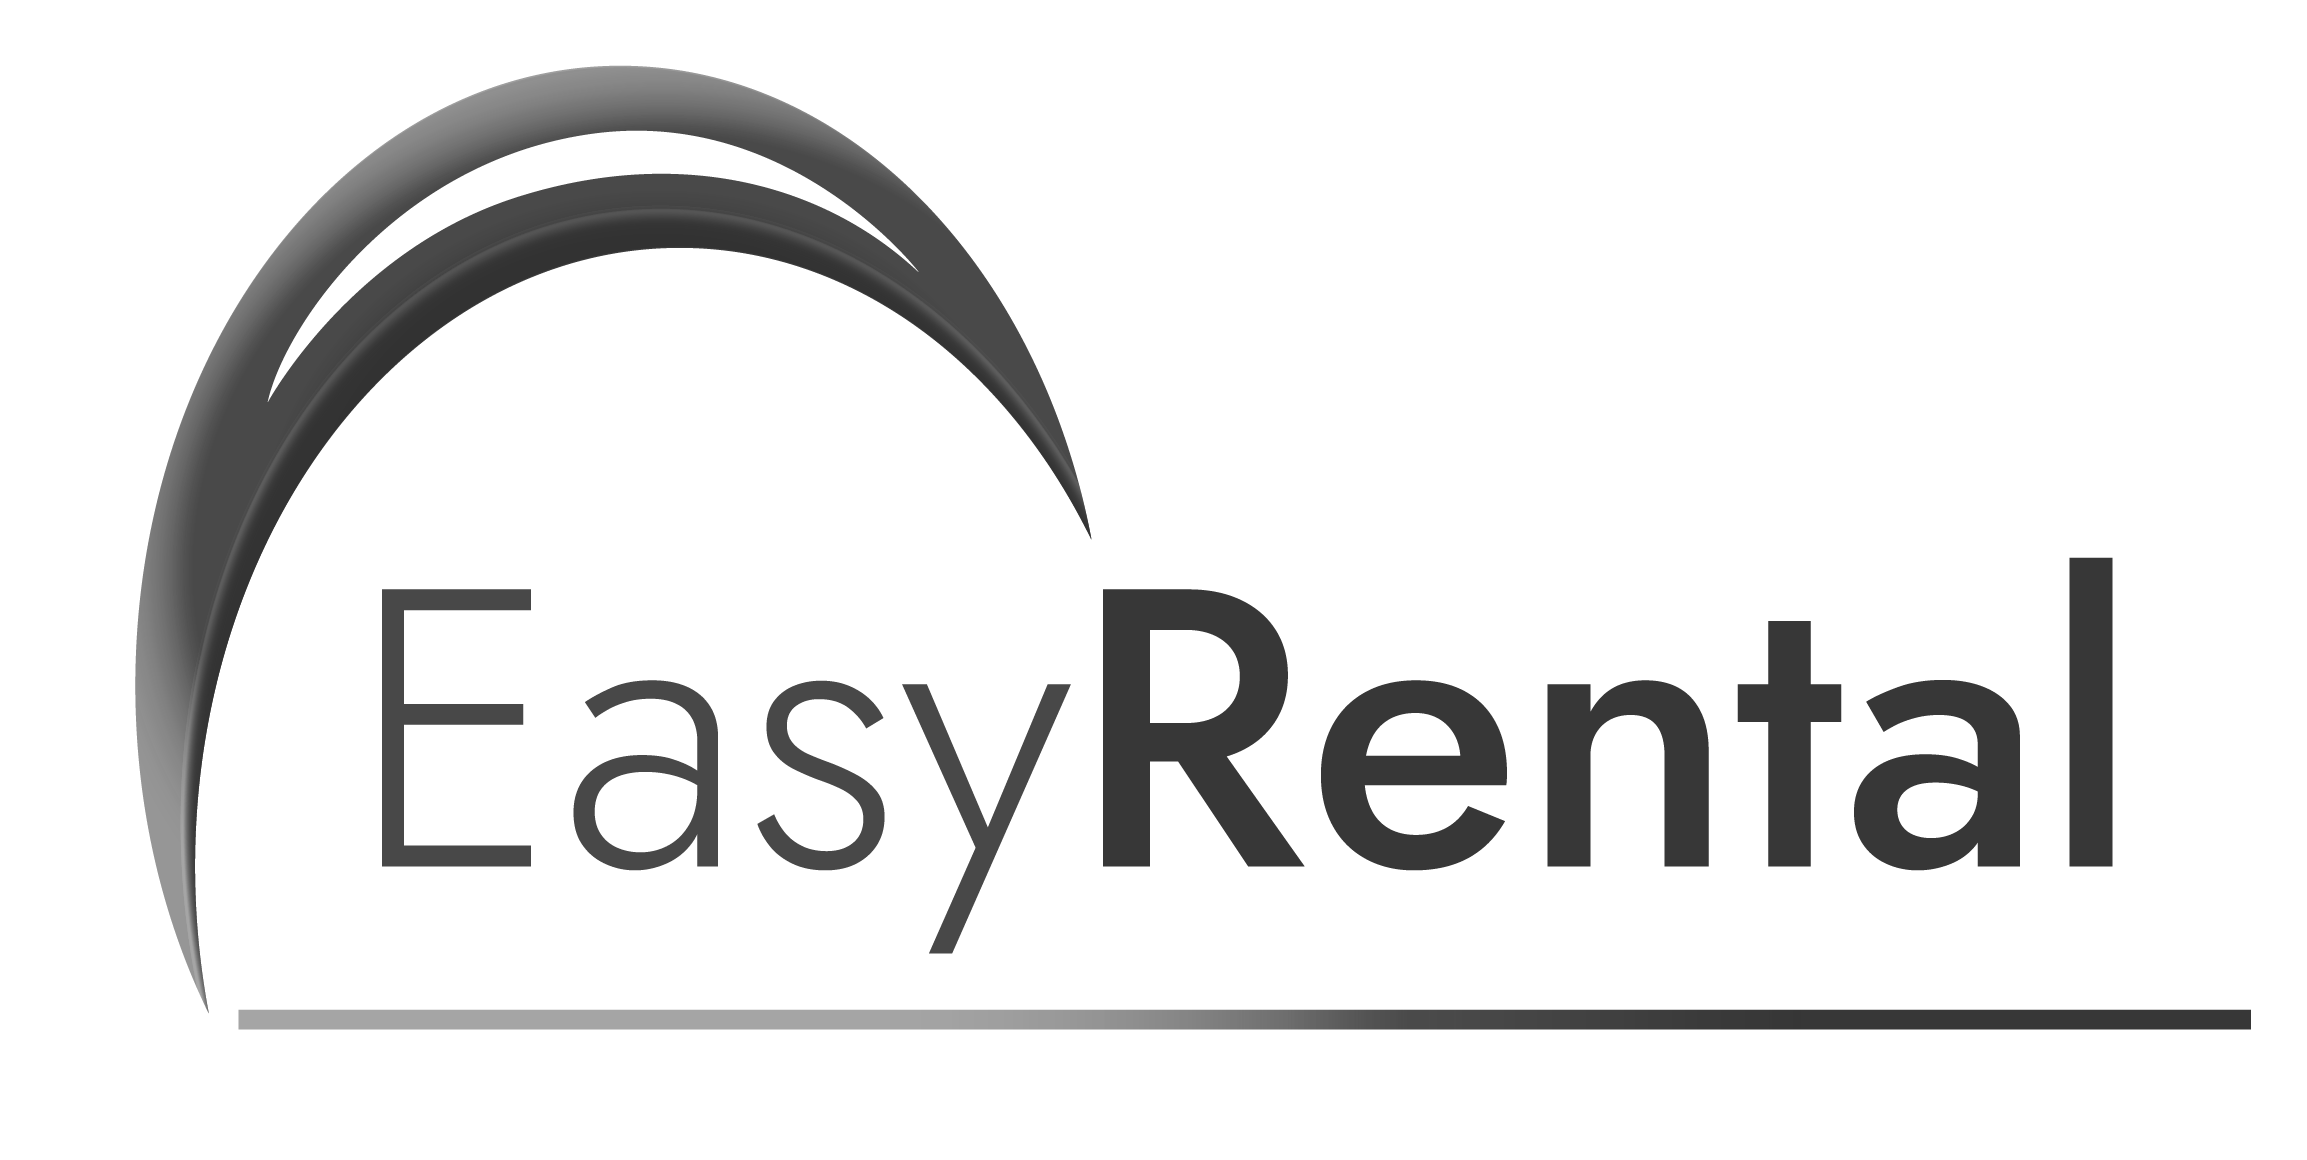 Easy Rental